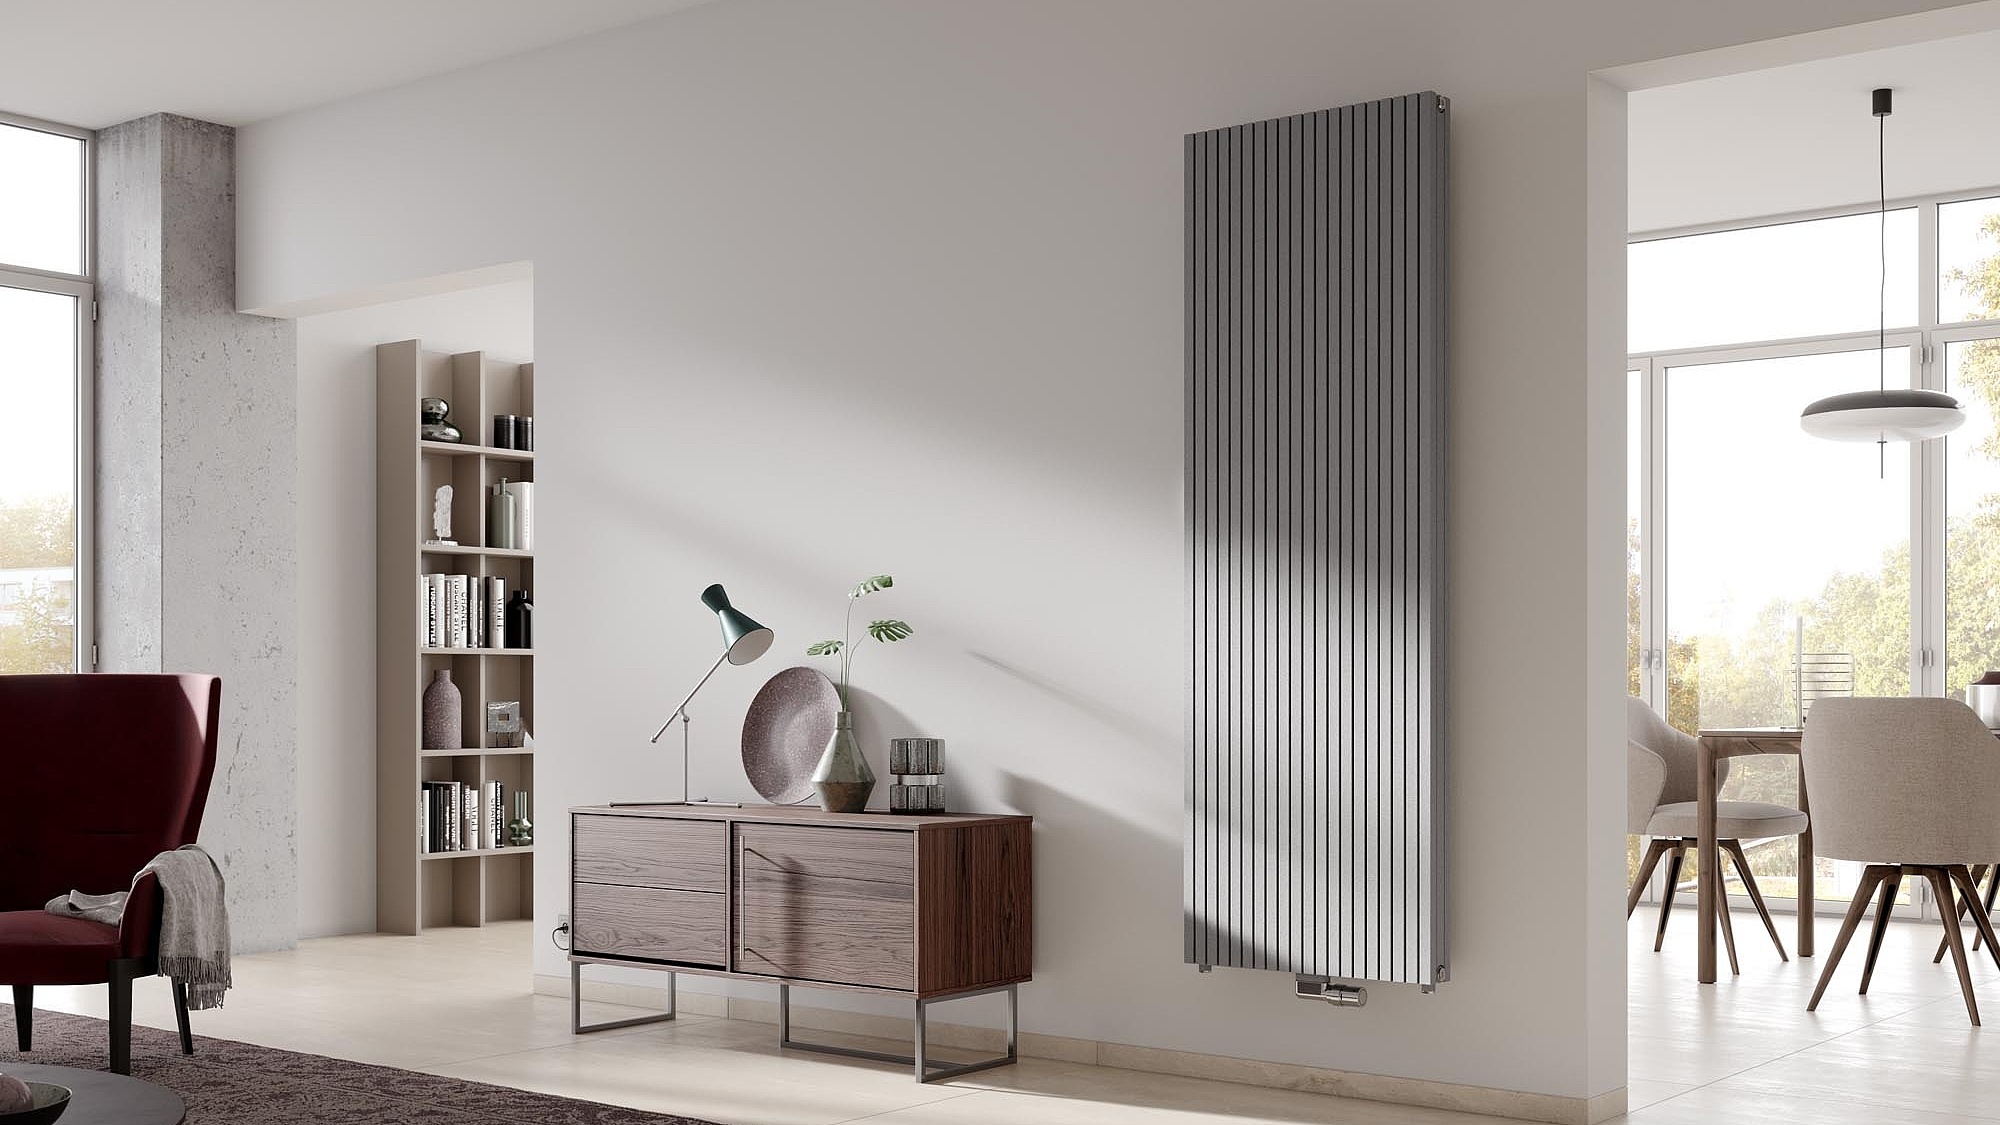 Kermi Decor Arte Pure dizaino radiatoriai - rankšluosčių džiovintuvai gali būti įvairių konstrukcinių aukščių ir konstrukcinių ilgių.